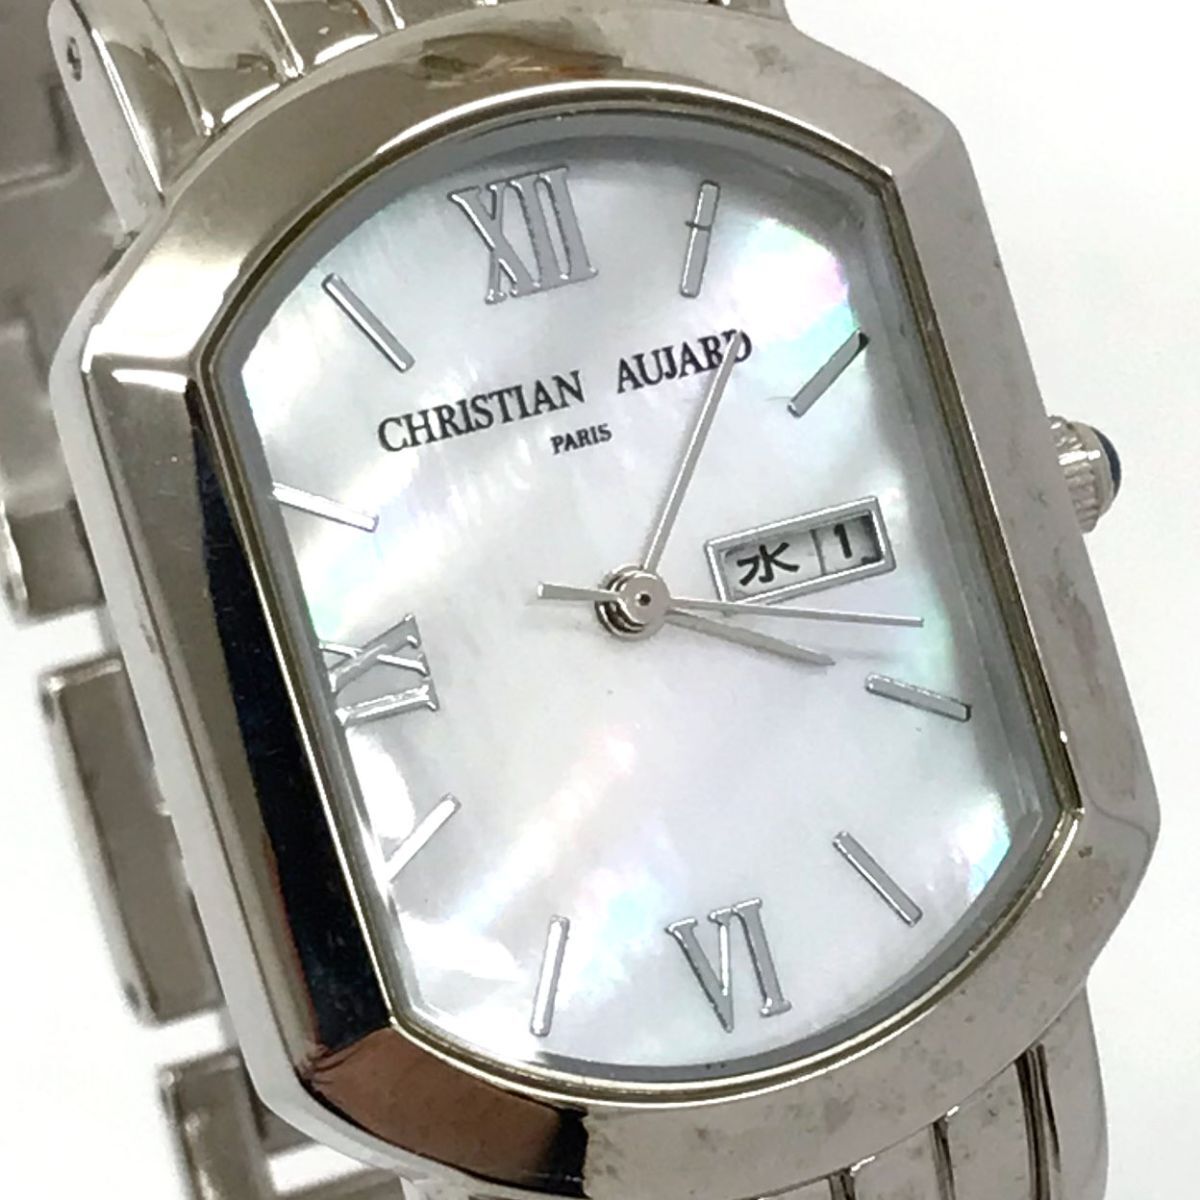 CHRISTIAN AUJARD Christian oja-ru наручные часы кварц аналог ракушка серебряный календарь модный батарейка заменена рабочее состояние подтверждено 